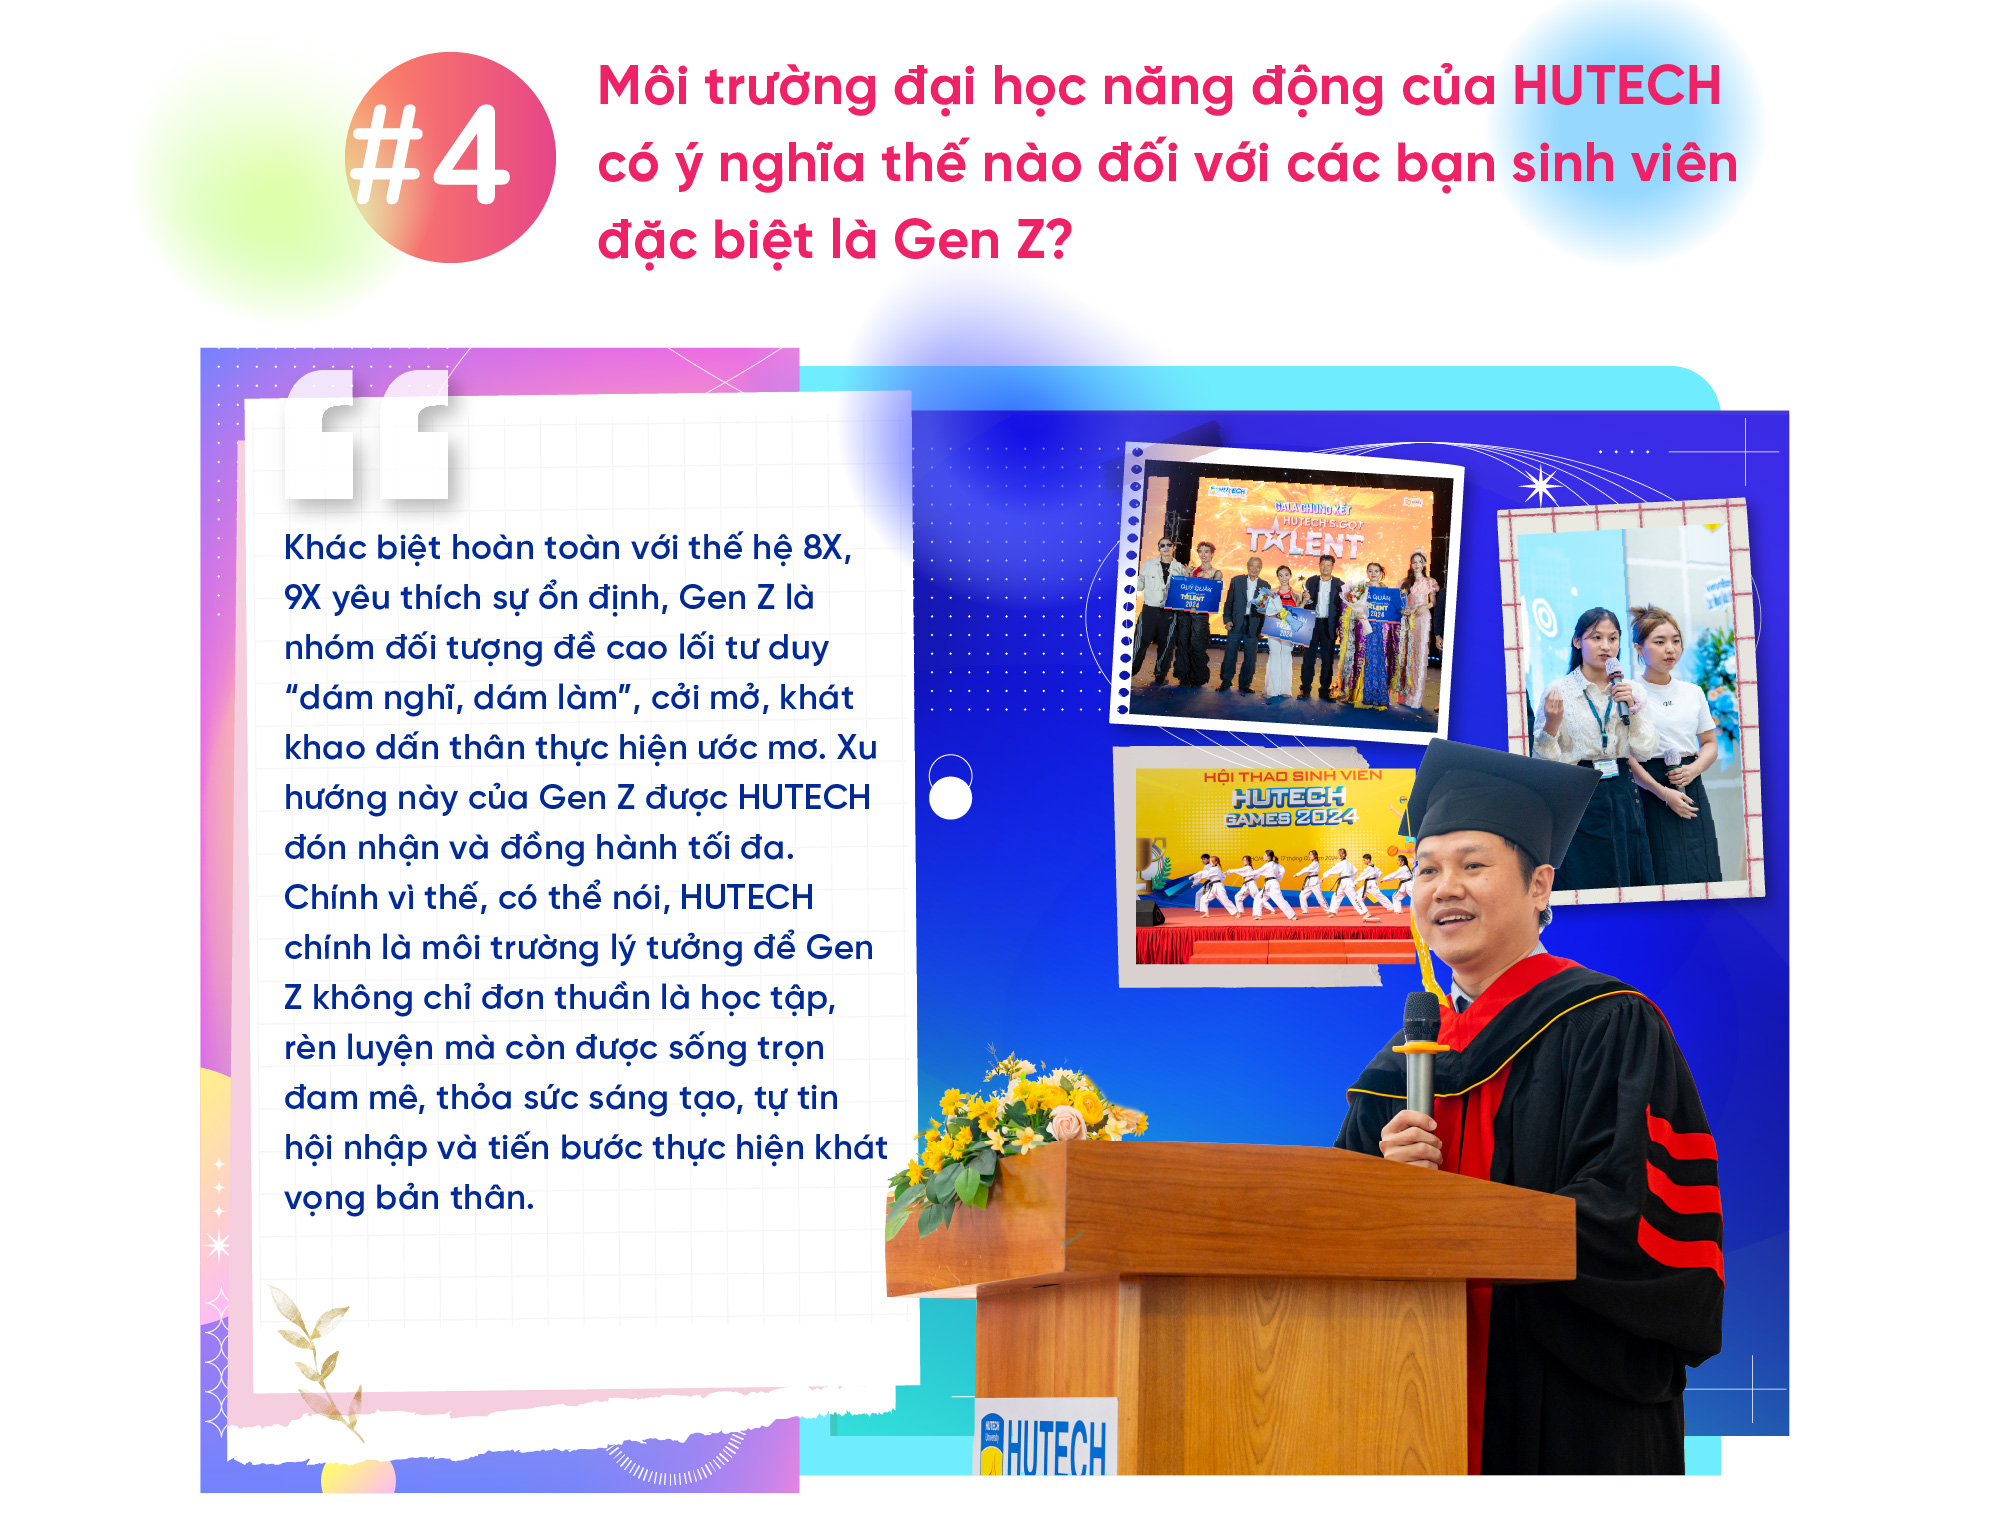 TS. Huỳnh Ngọc Anh: “Năng động” đã trở thành “đặc điểm nhận diện” của sinh viên HUTECH 12